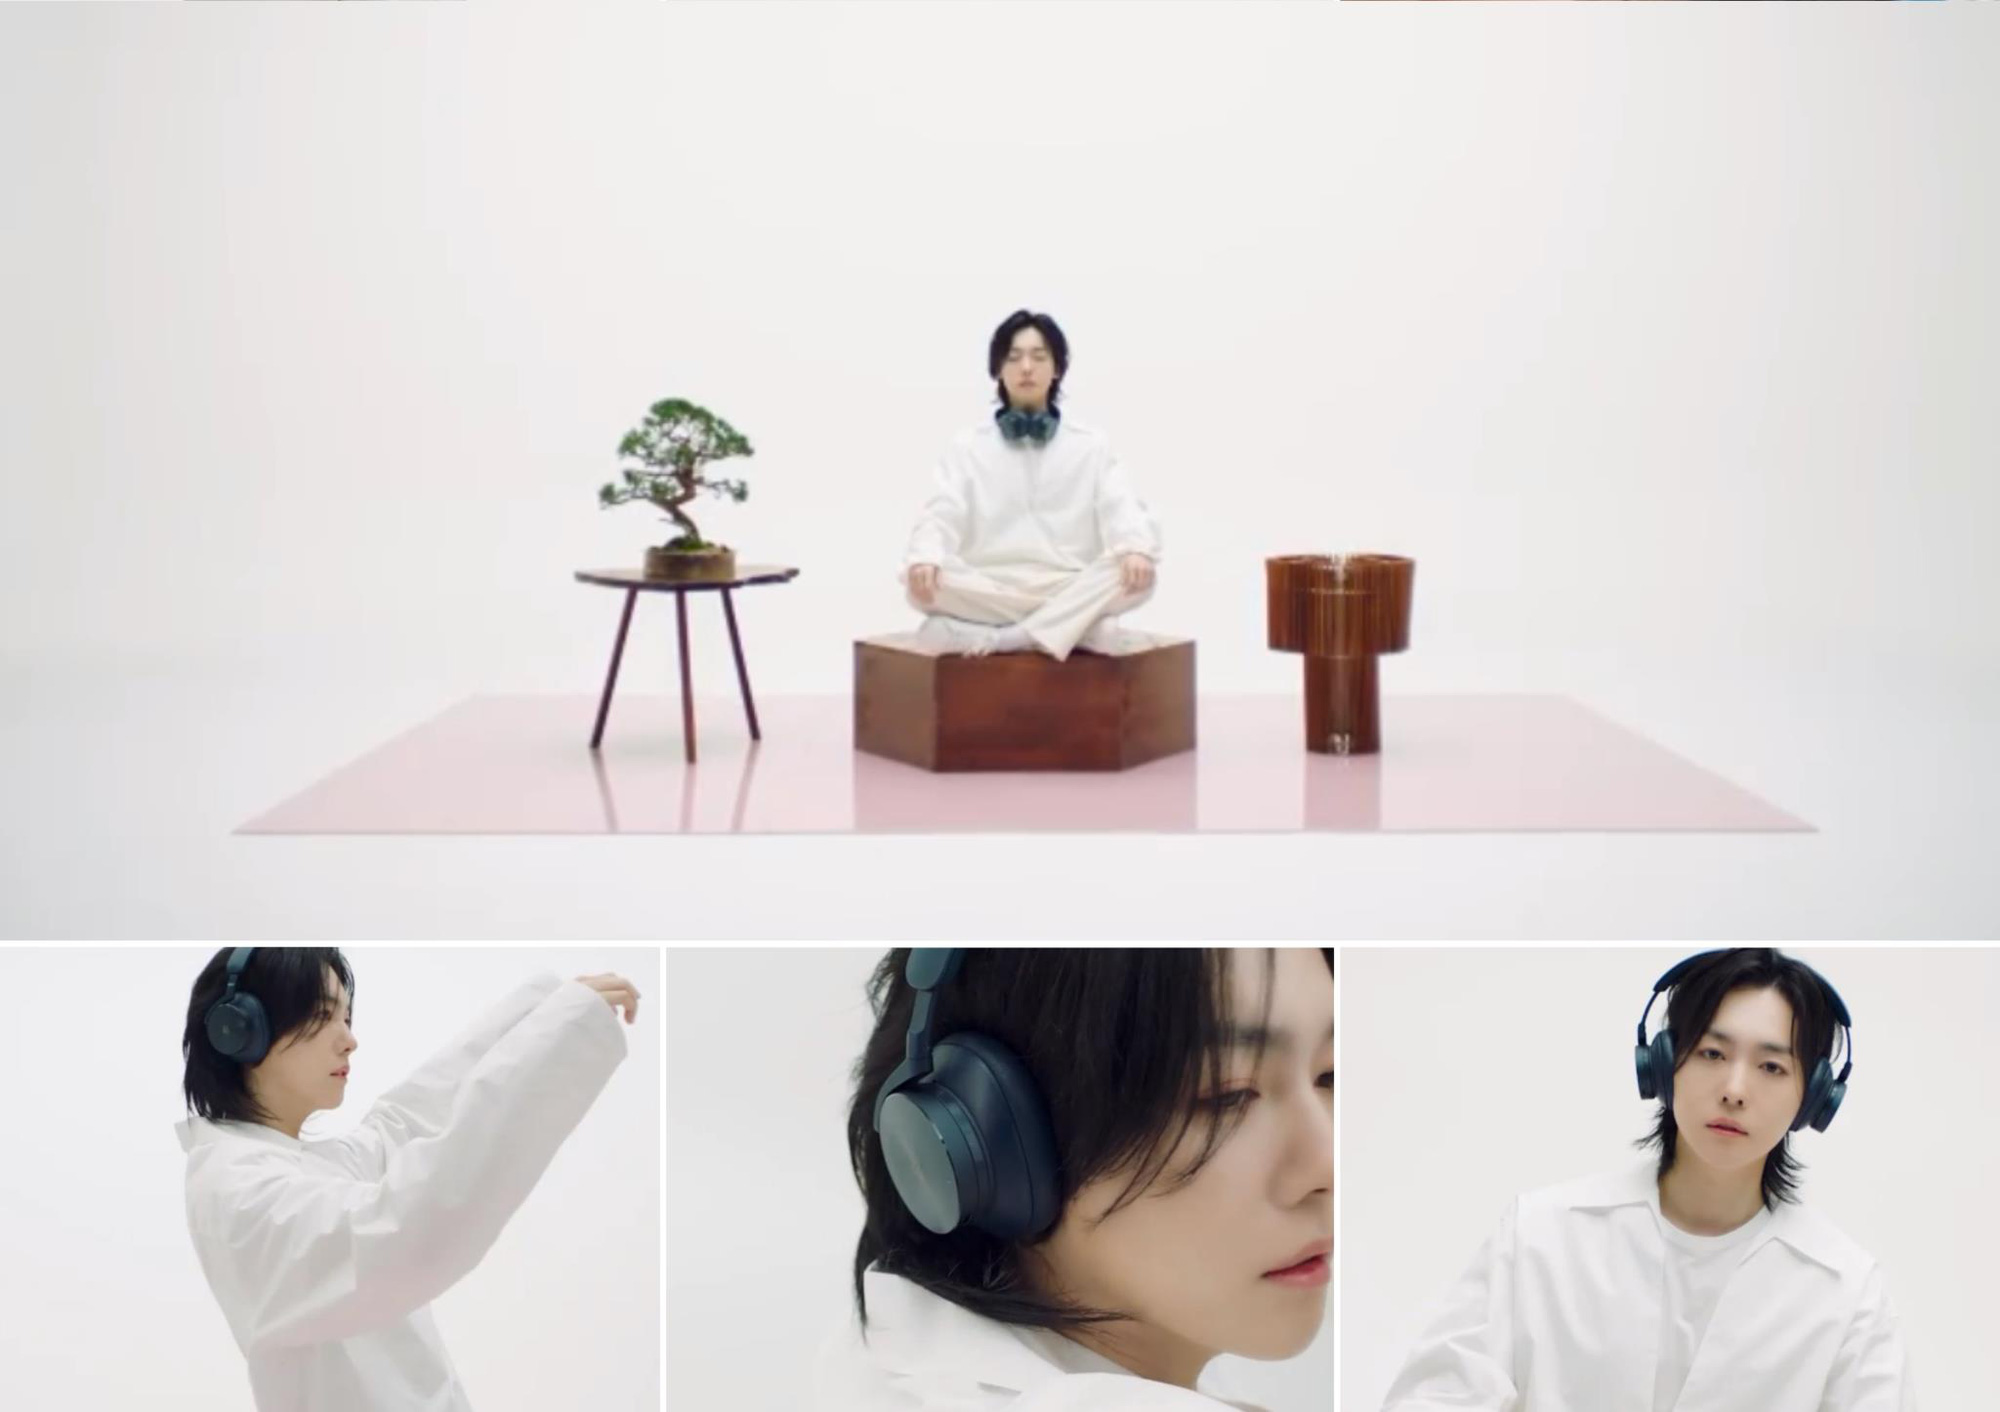 Bóc giá tai nghe xa xỉ của Winner: Mino và Jin-woo dùng tai nghe có giá hơn 27 triệu đồng - Ảnh 4.